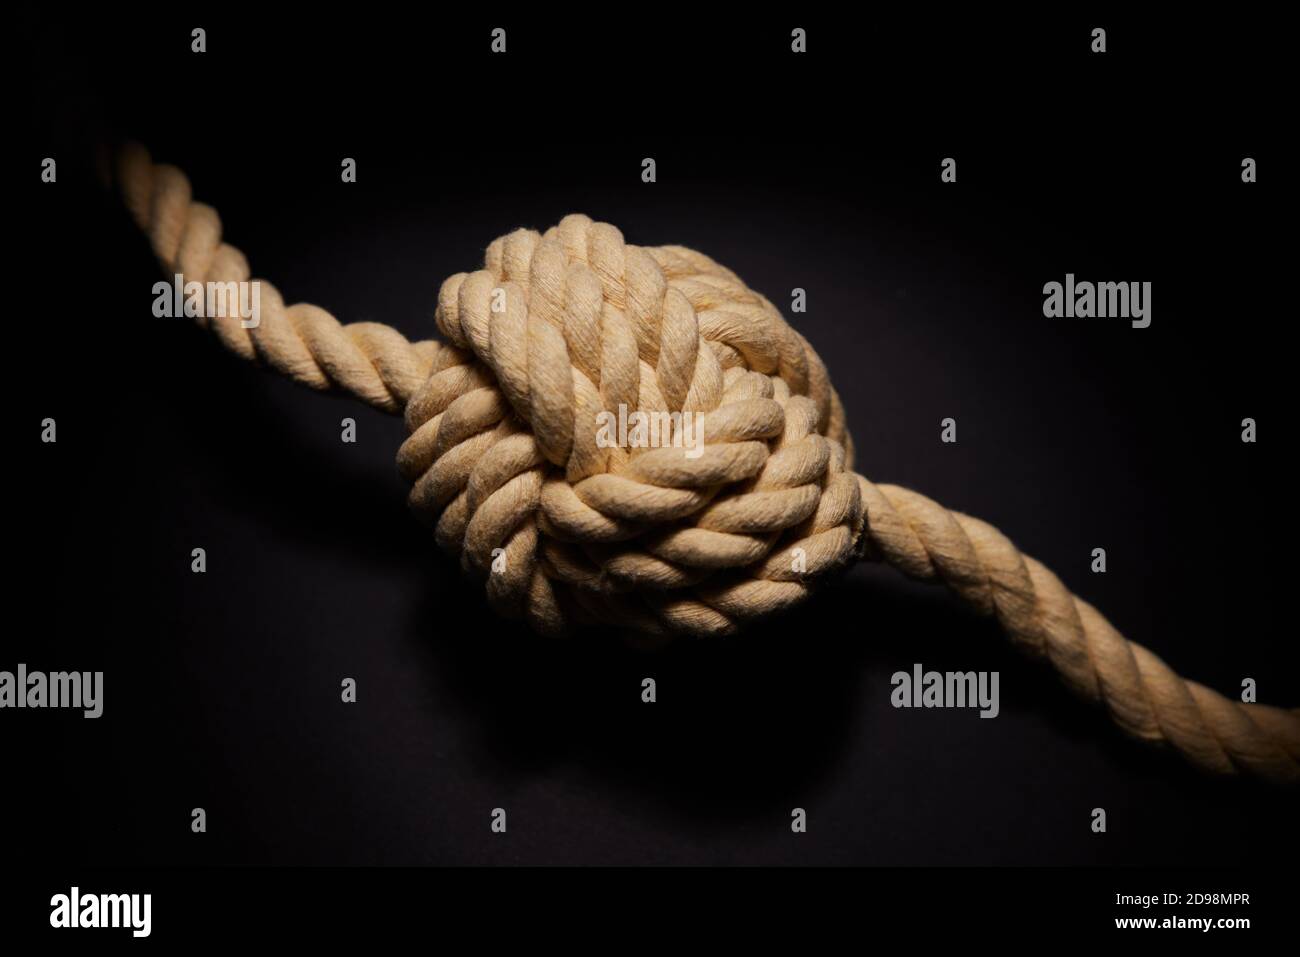 Photo de concept de corde attachée avec Knot sur fond noir Illustrer le problème ou la question de santé mentale Banque D'Images